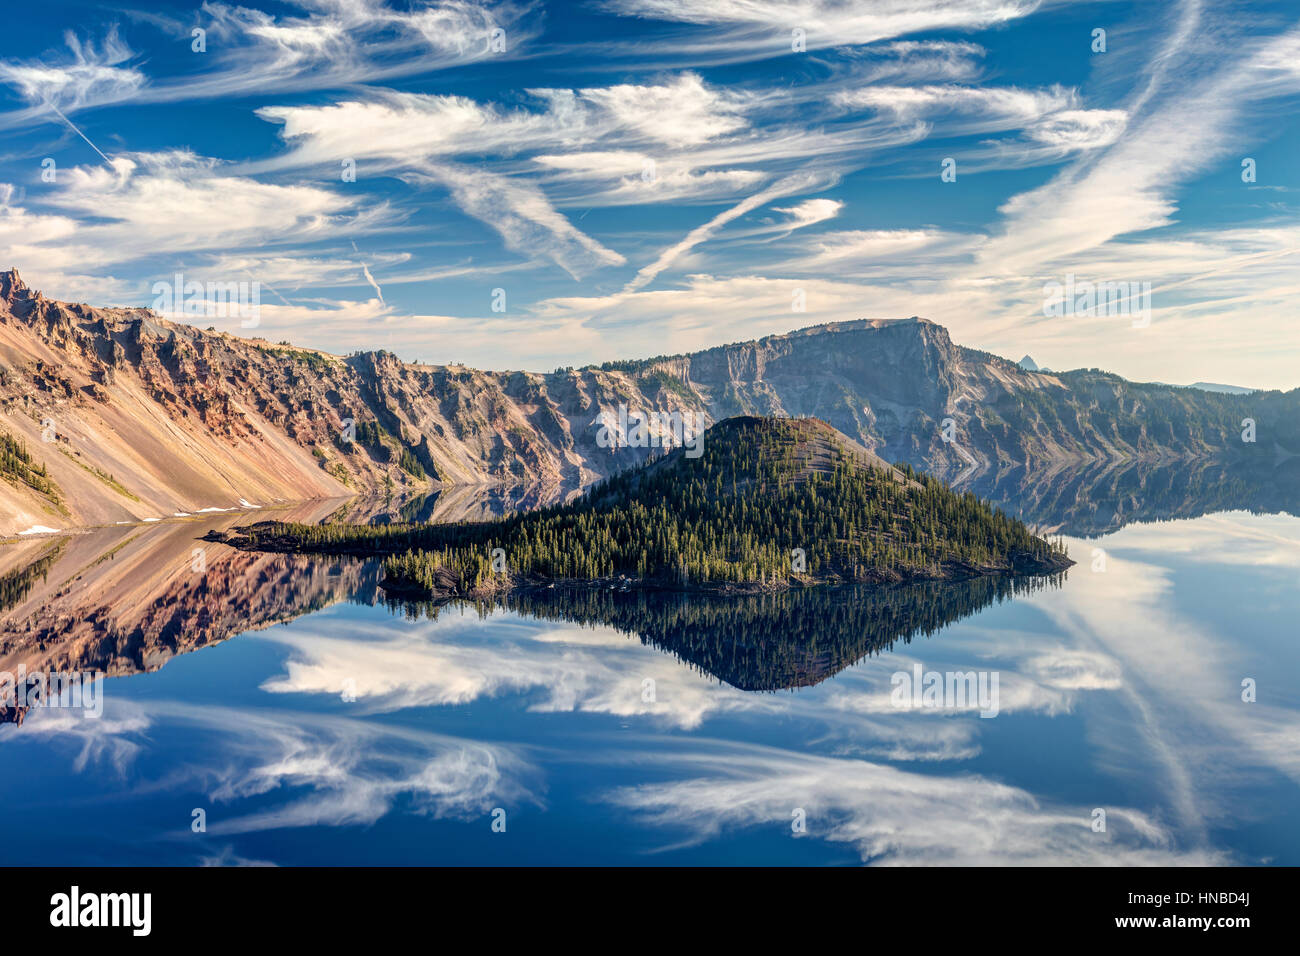 Un parfait reflet de l'île de l'Assistant avec des nuages dans le lac du cratère, juste après le lever du soleil. Crater Lake National Park, Oregon. Banque D'Images